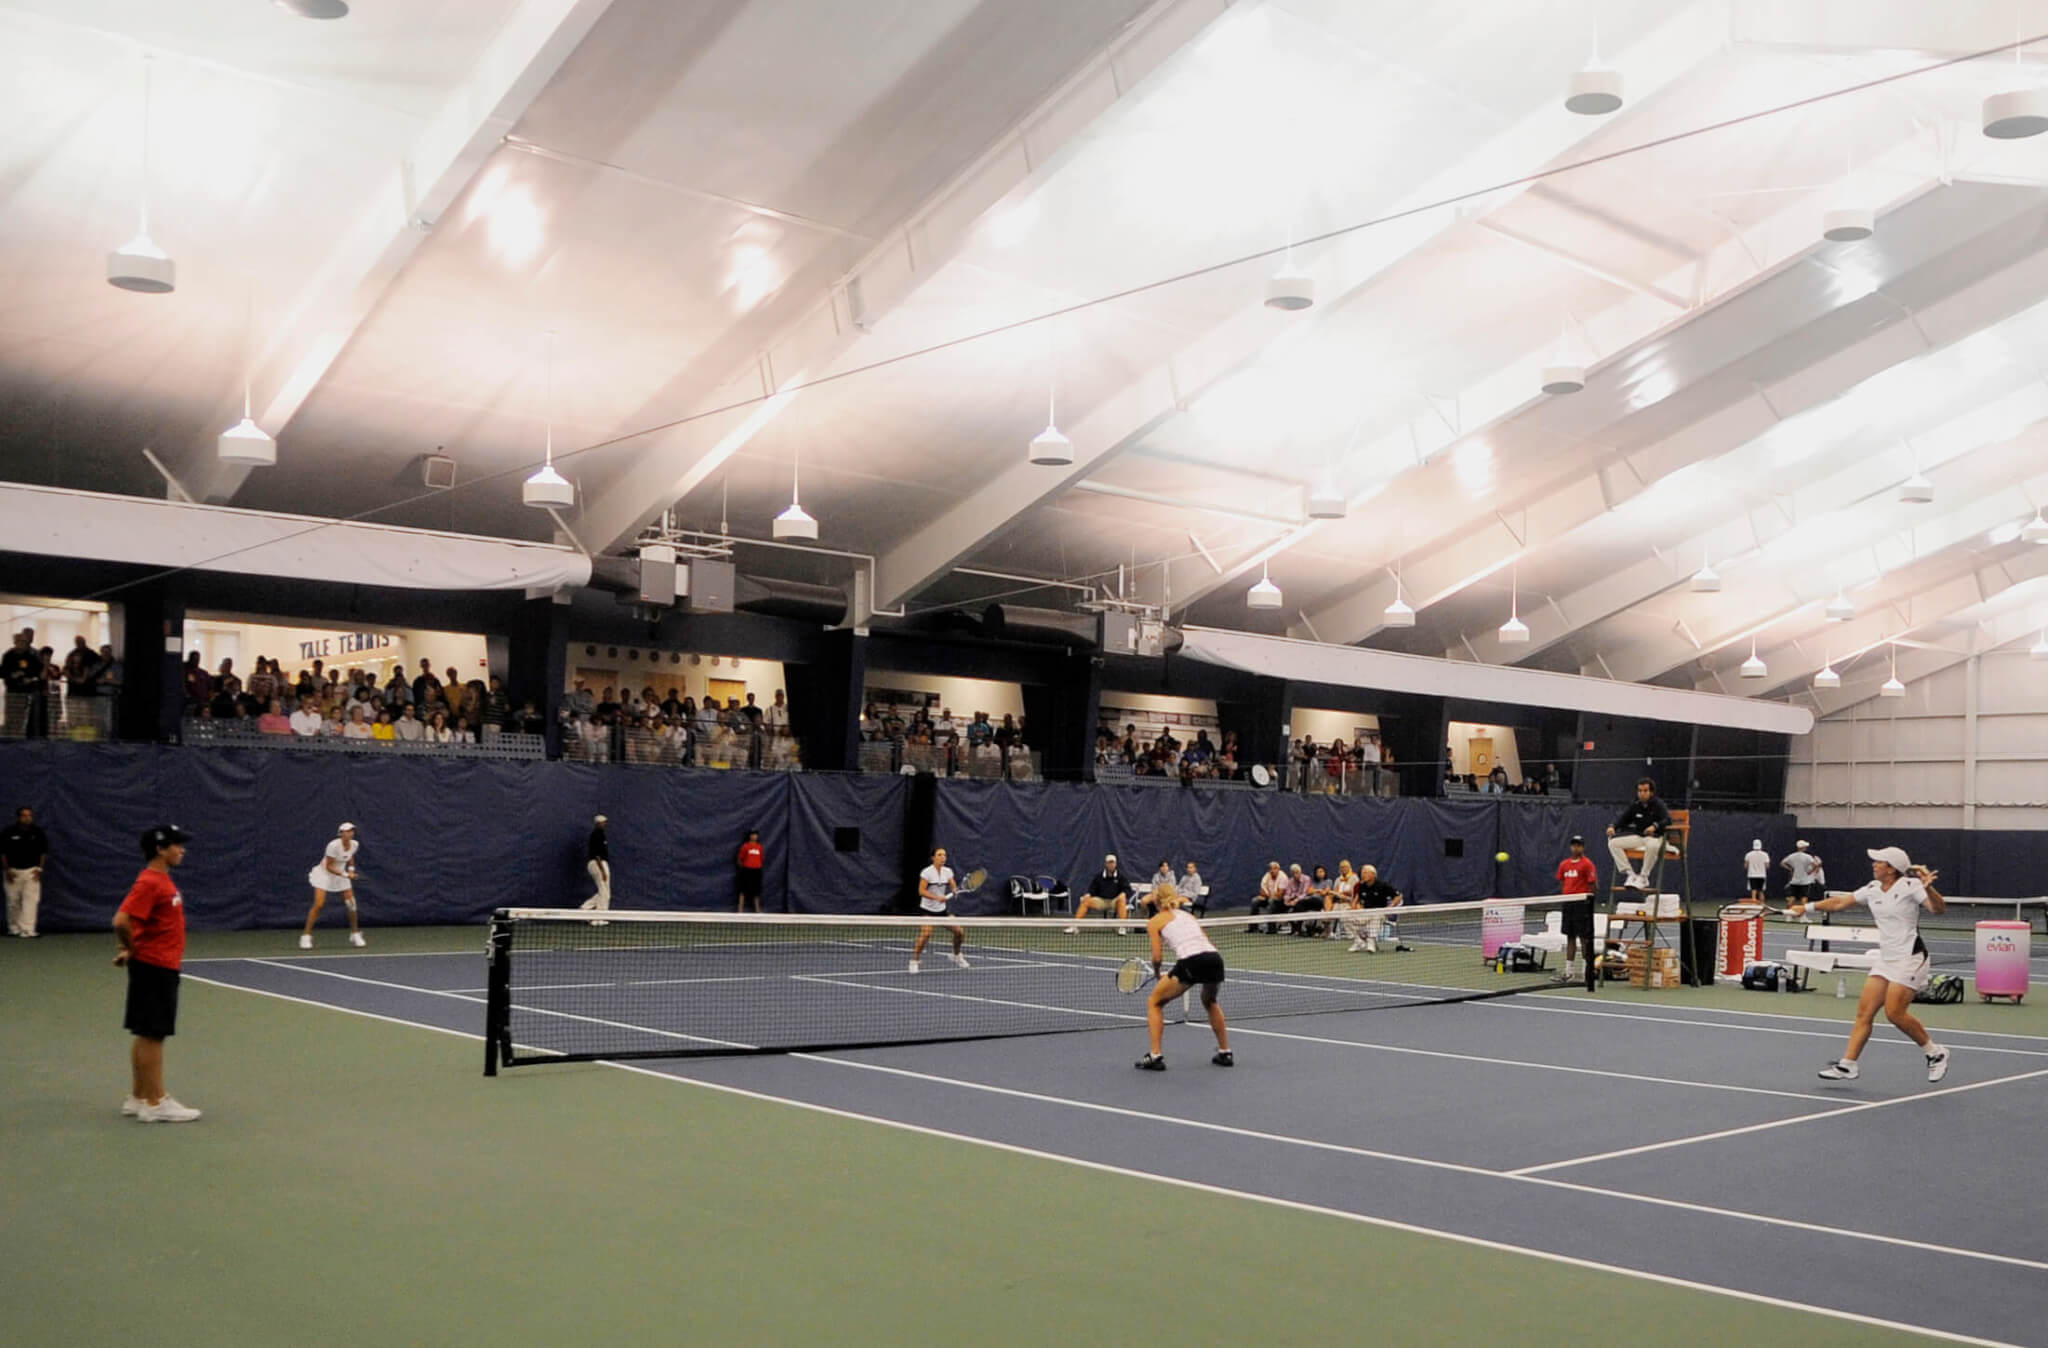 Best indoor tennis in Chicago - TennisPAL